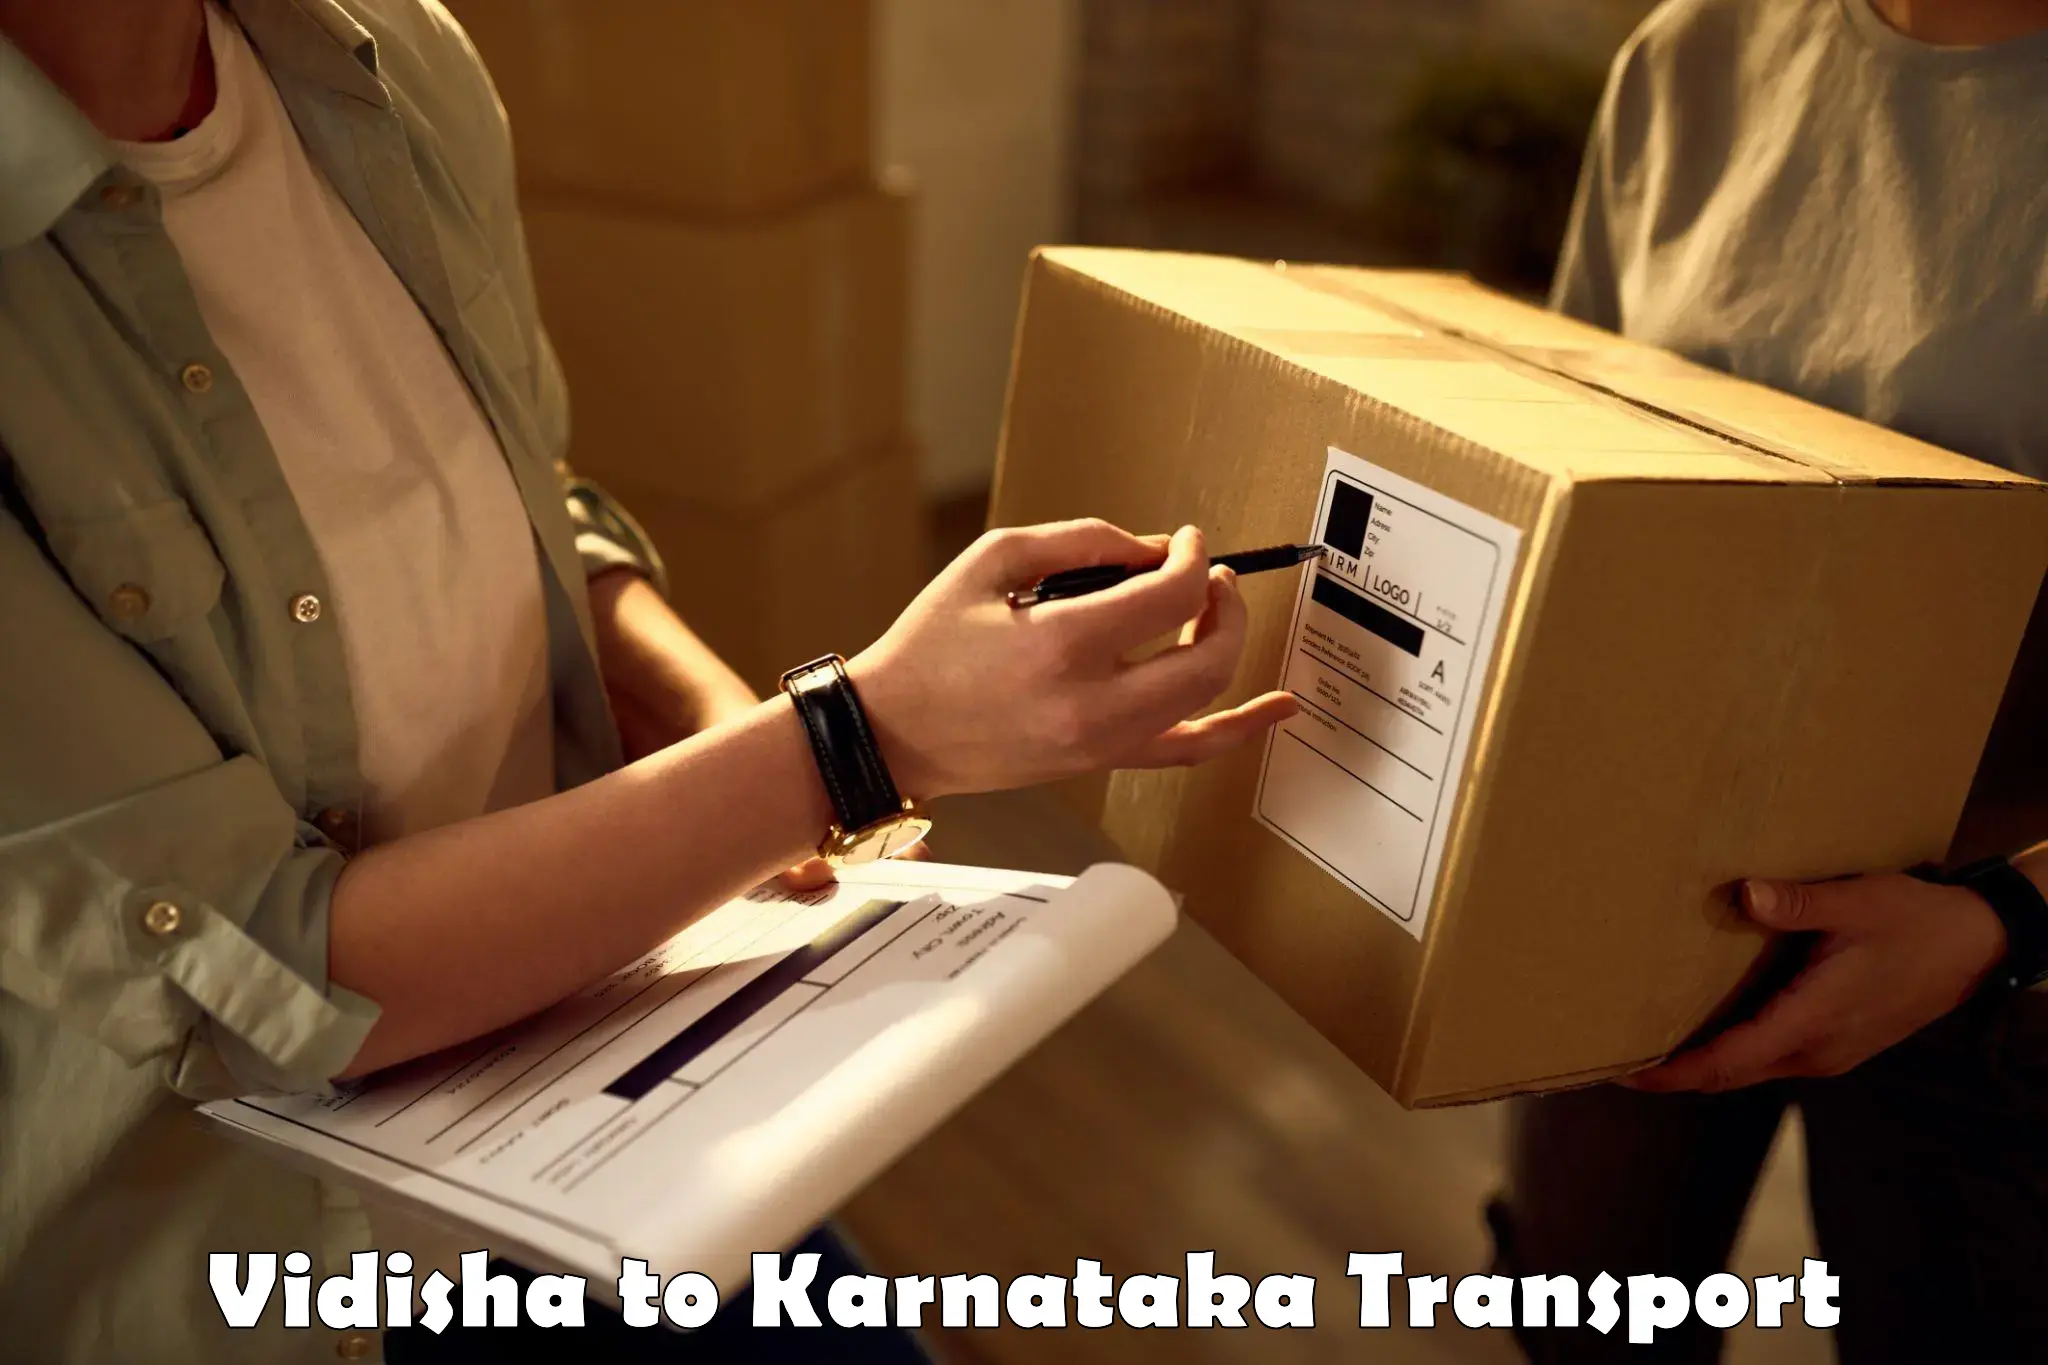 Furniture transport service Vidisha to Yellapur